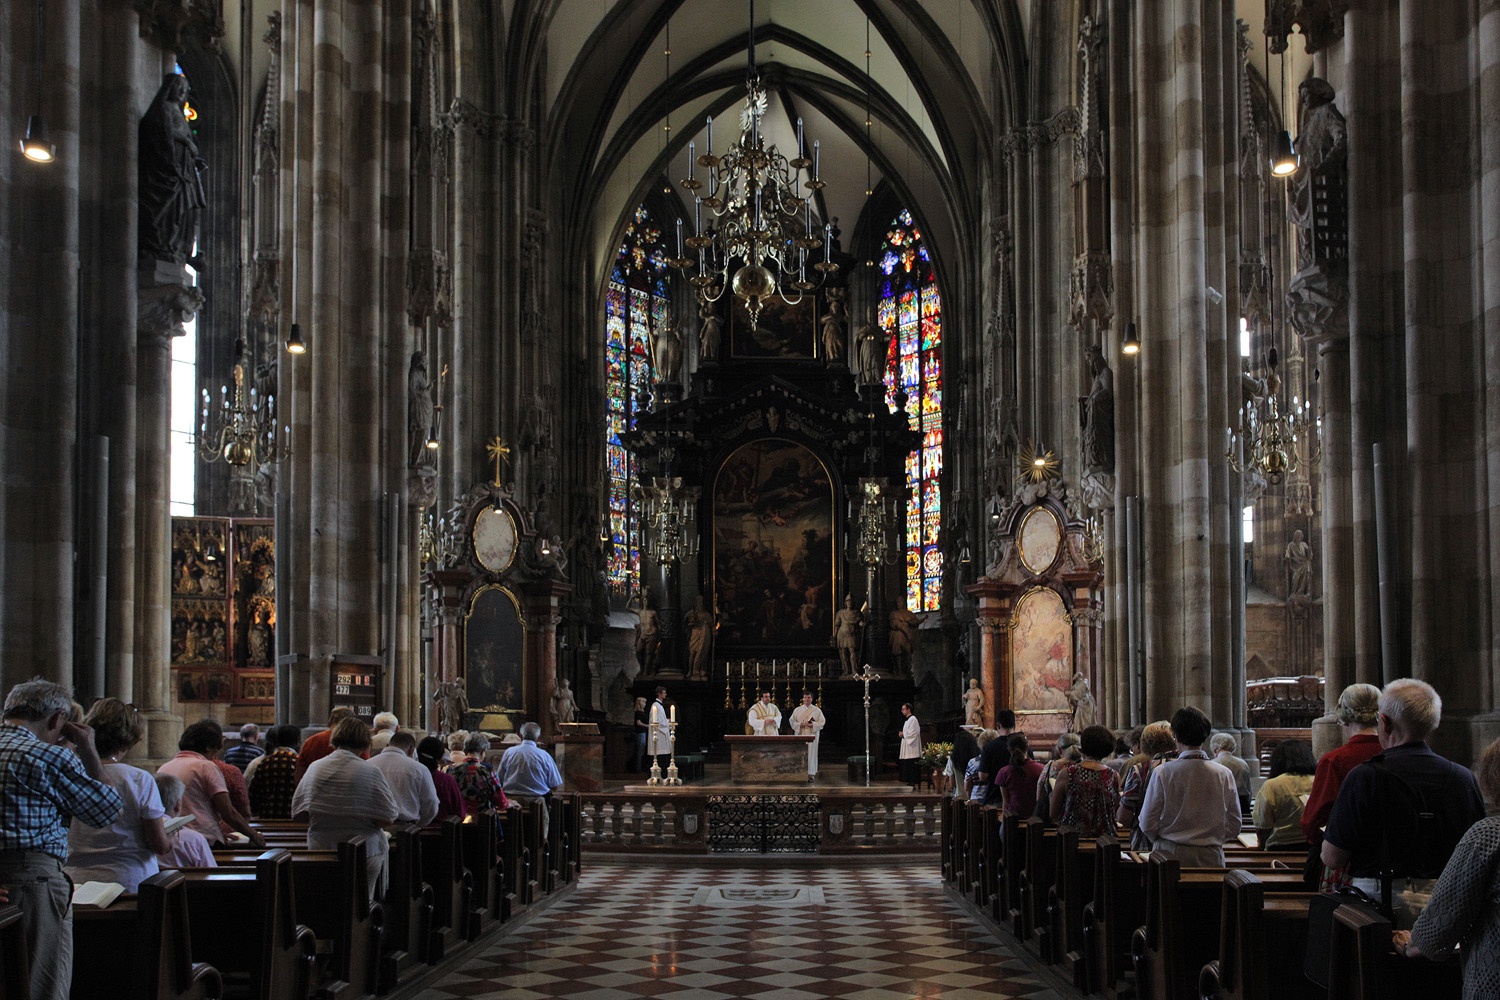 bill-hocker-st-stephen's-cathedral-vienna-austria-2013